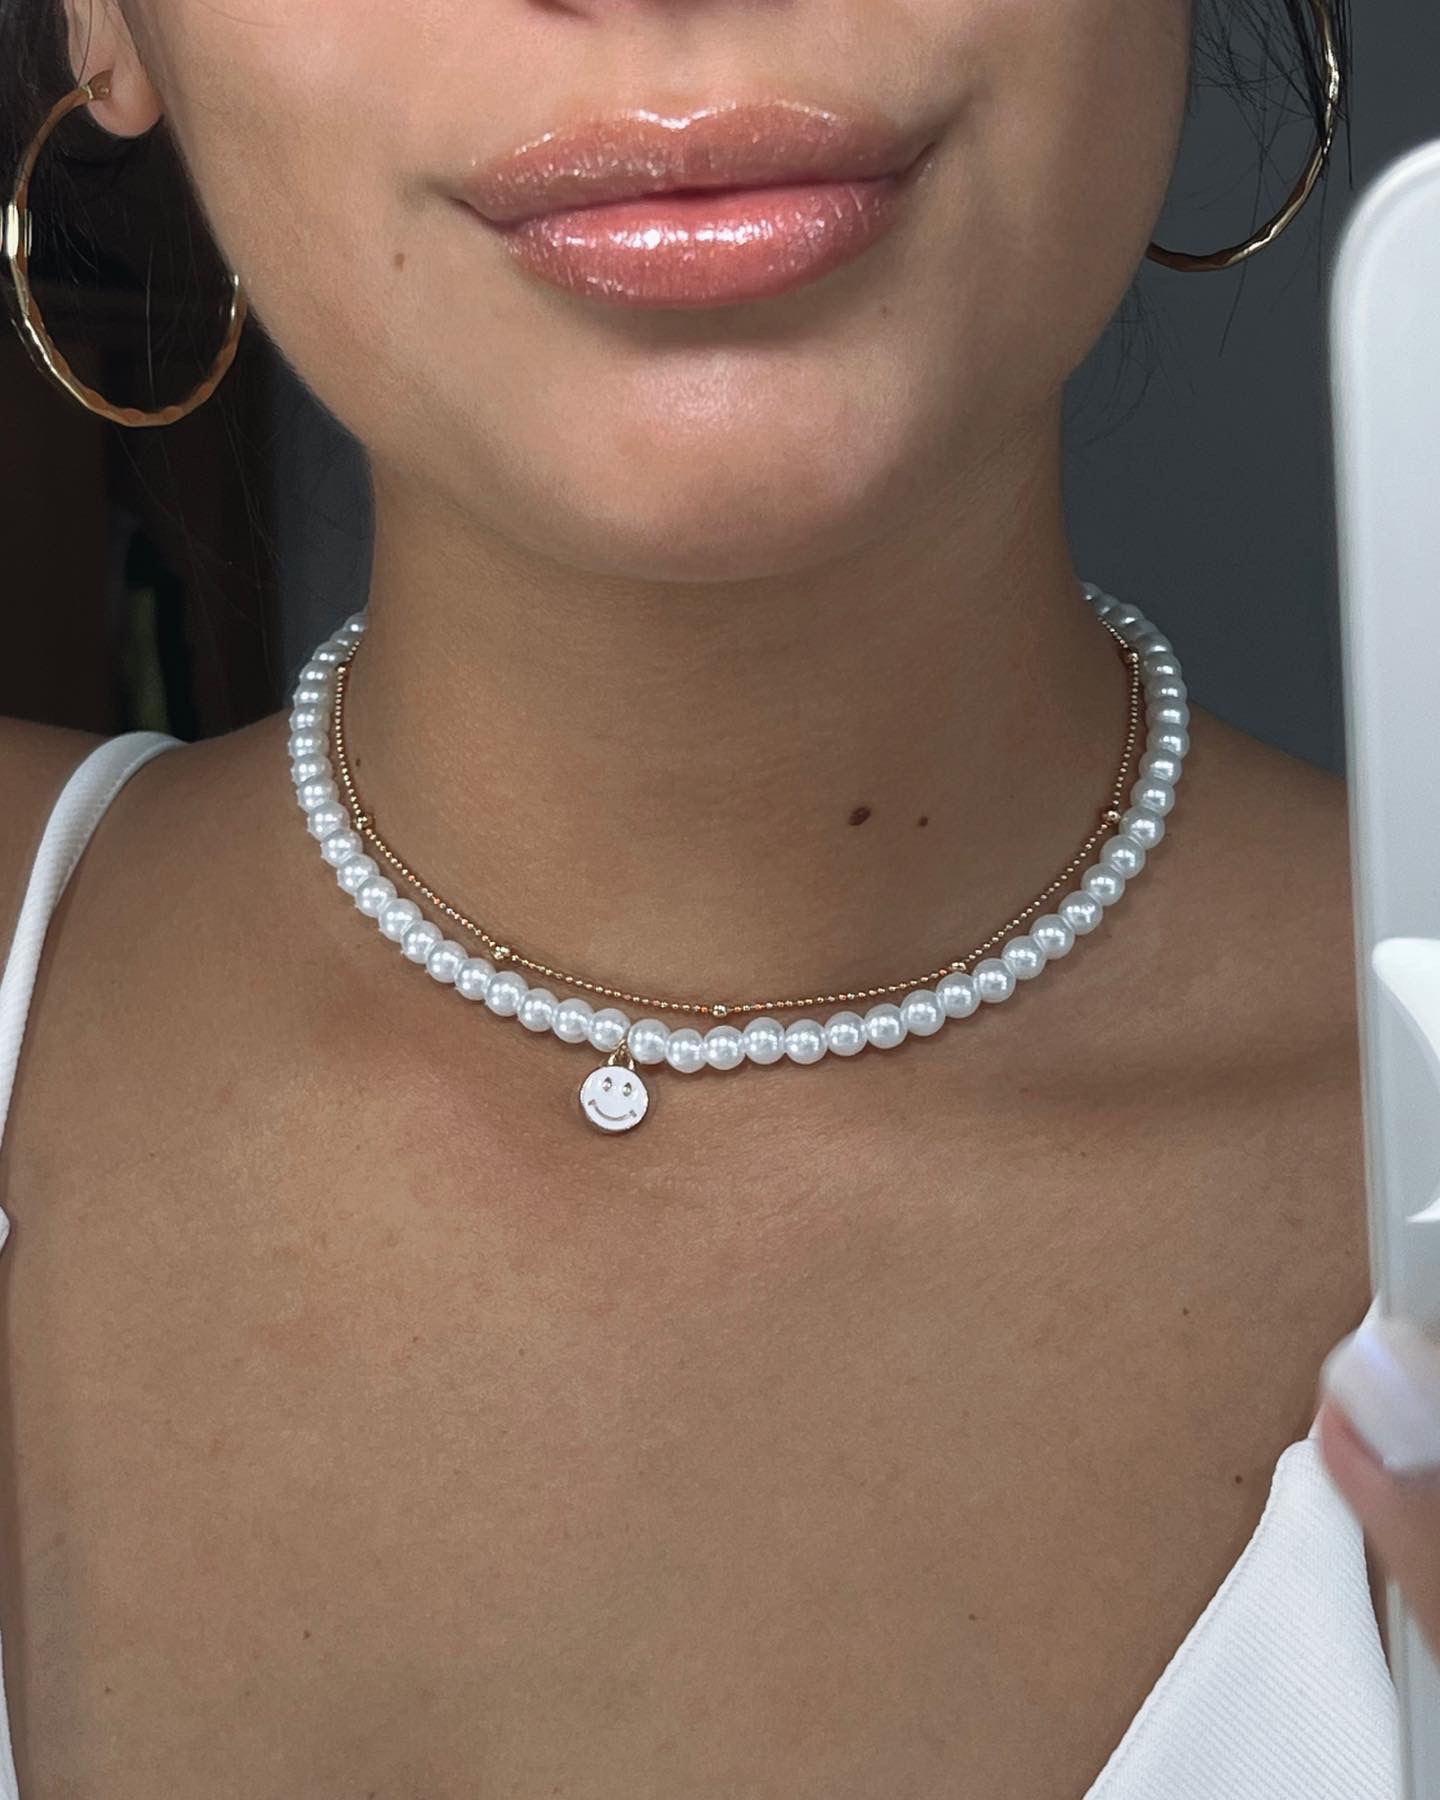 Collar de perlas - Dije carita blanca